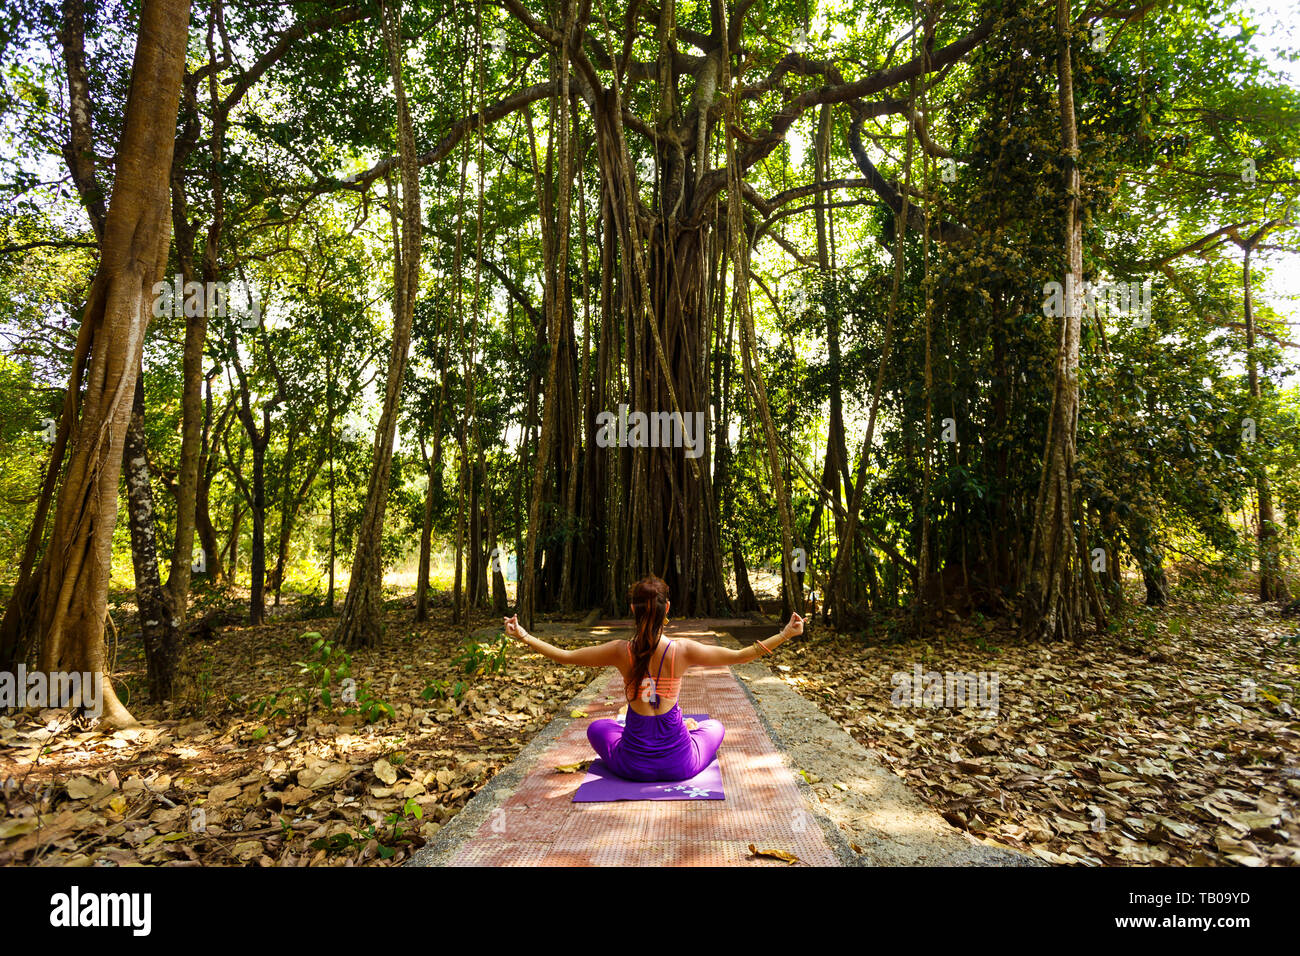 La donna le pratiche yoga in una giungla sullo sfondo di un grande albero. Banyan Tree. Foto Stock